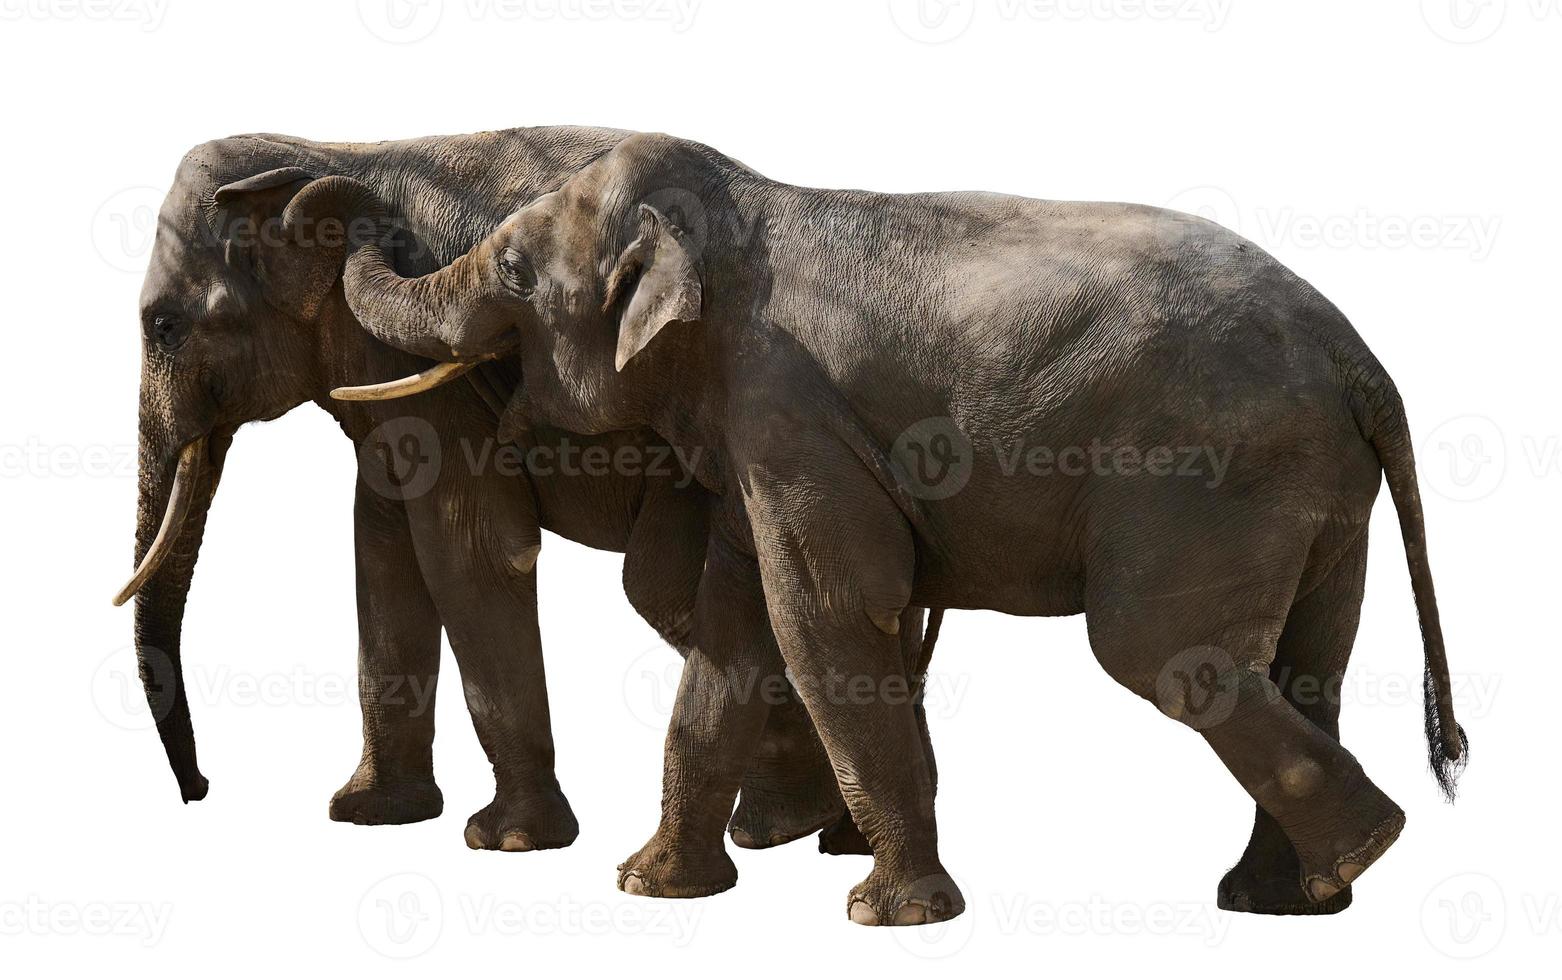 dois adulto elefantes andar Próximo para cada outro, animais estão isolado em uma branco fundo foto